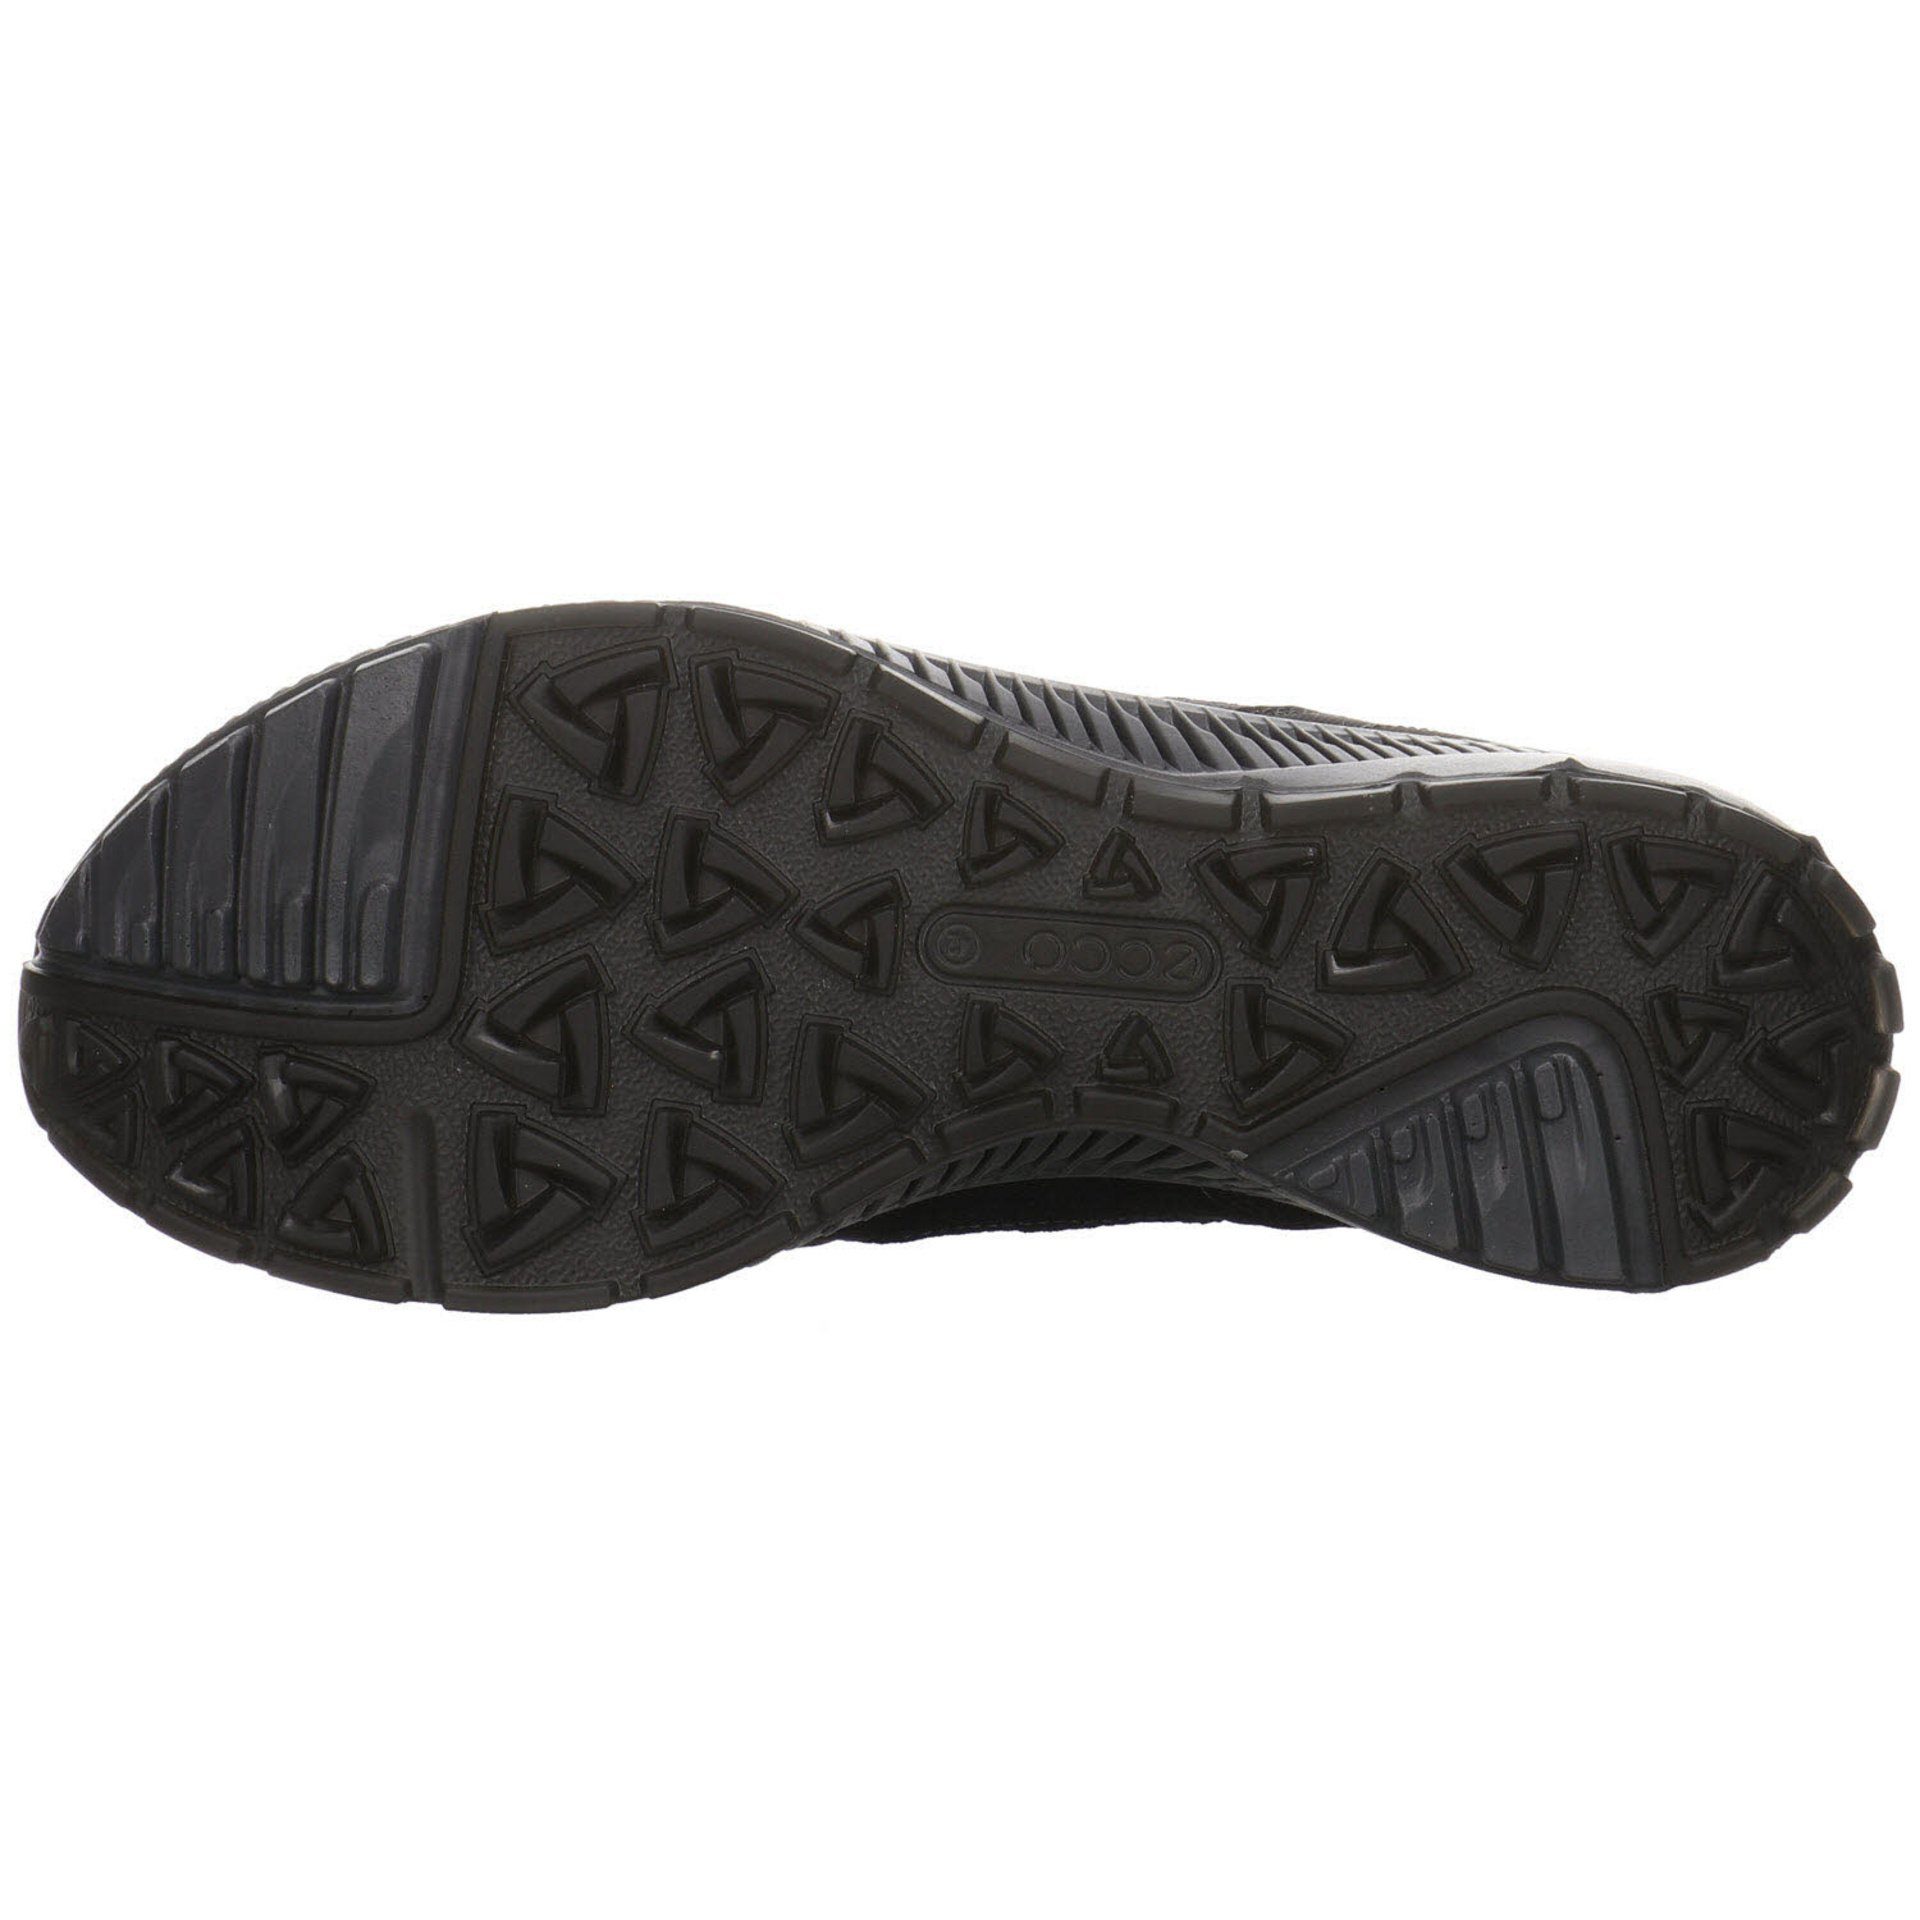 Ecco Outdoorschuh Synthetikkombination Outdoorschuh Outdoor schwarz Schuhe Herren GTX dunkel Terracruise